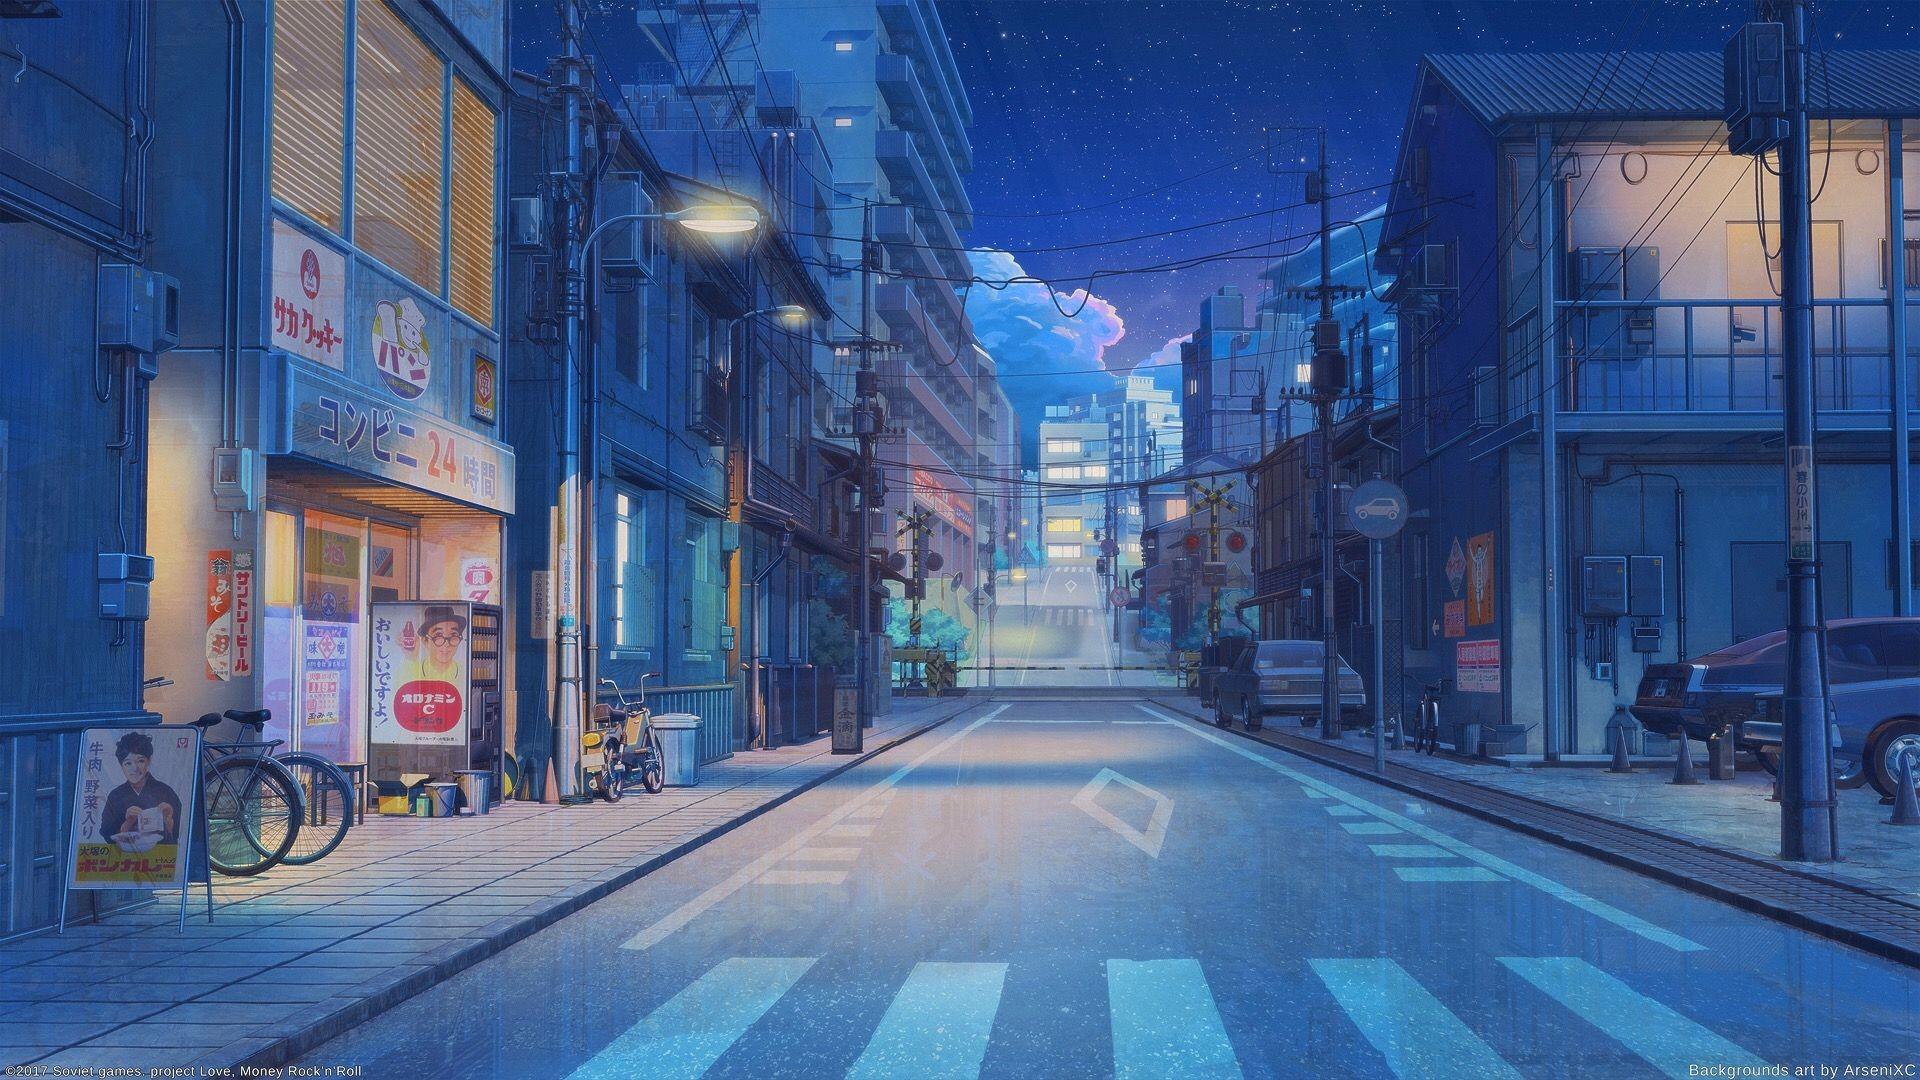 Aesthetic Anime Desktop Wallpaper Free Aesthetic Anime Desktop Background